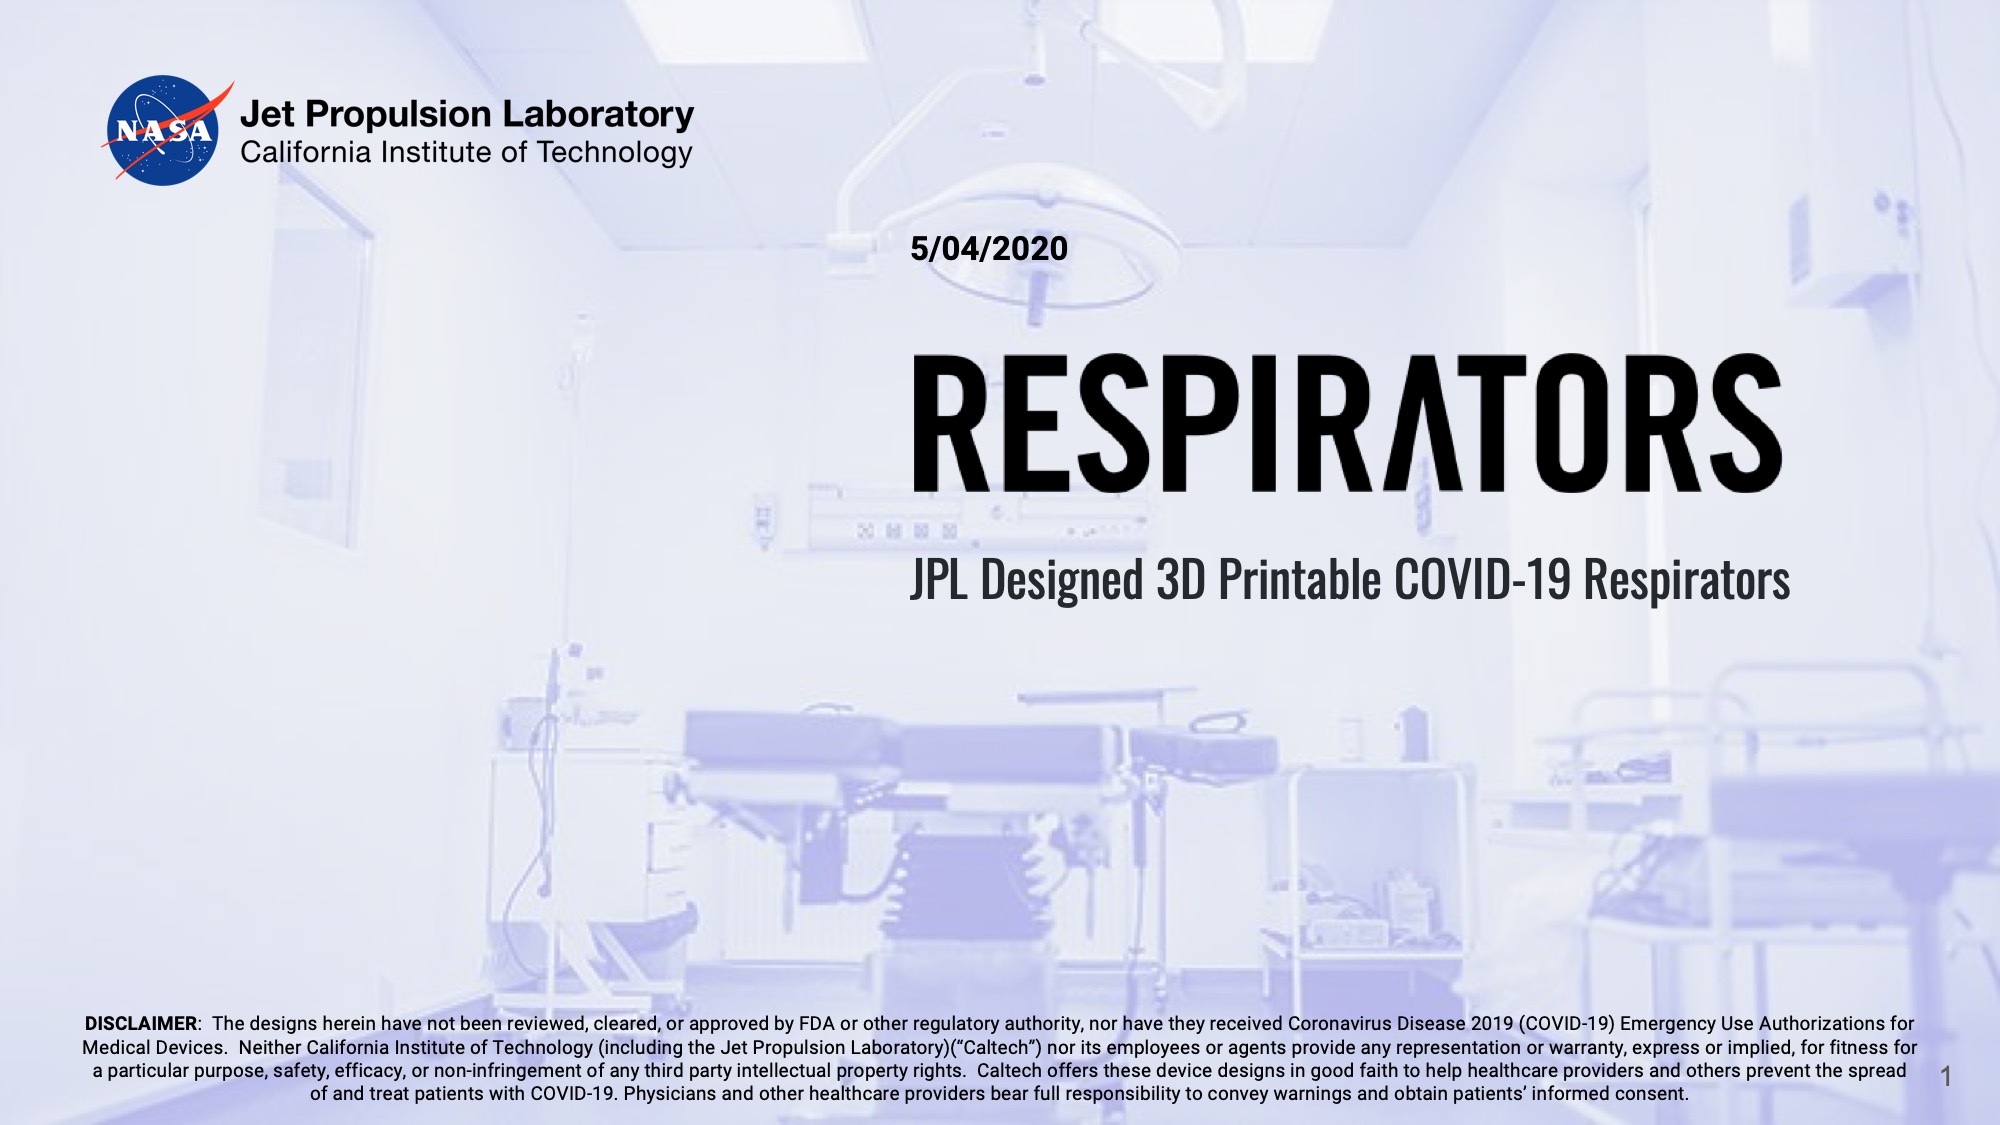 Title Slide: Respirators: JPL Designed 3D Printable COVID-19 Respirators